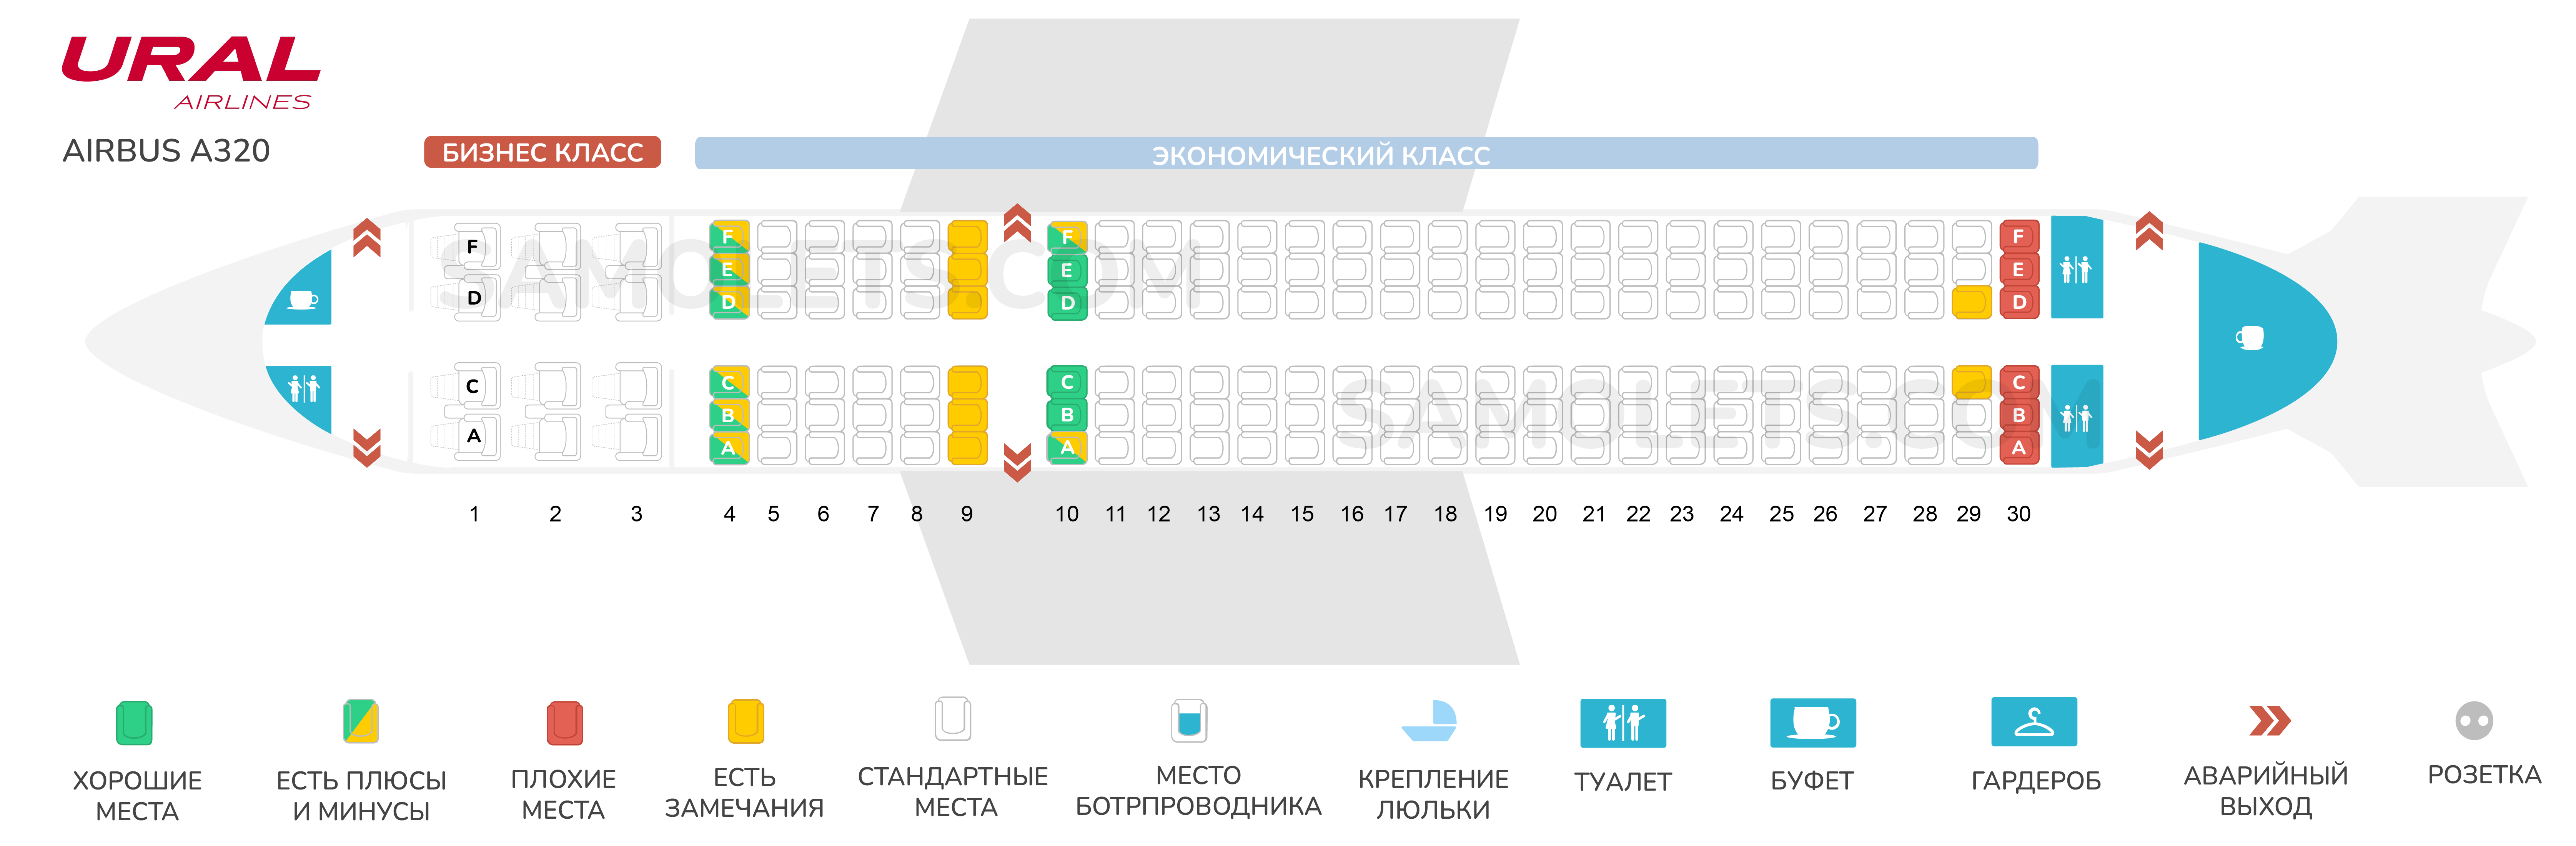 Аэробус а320 Уральские авиалинии схема салона